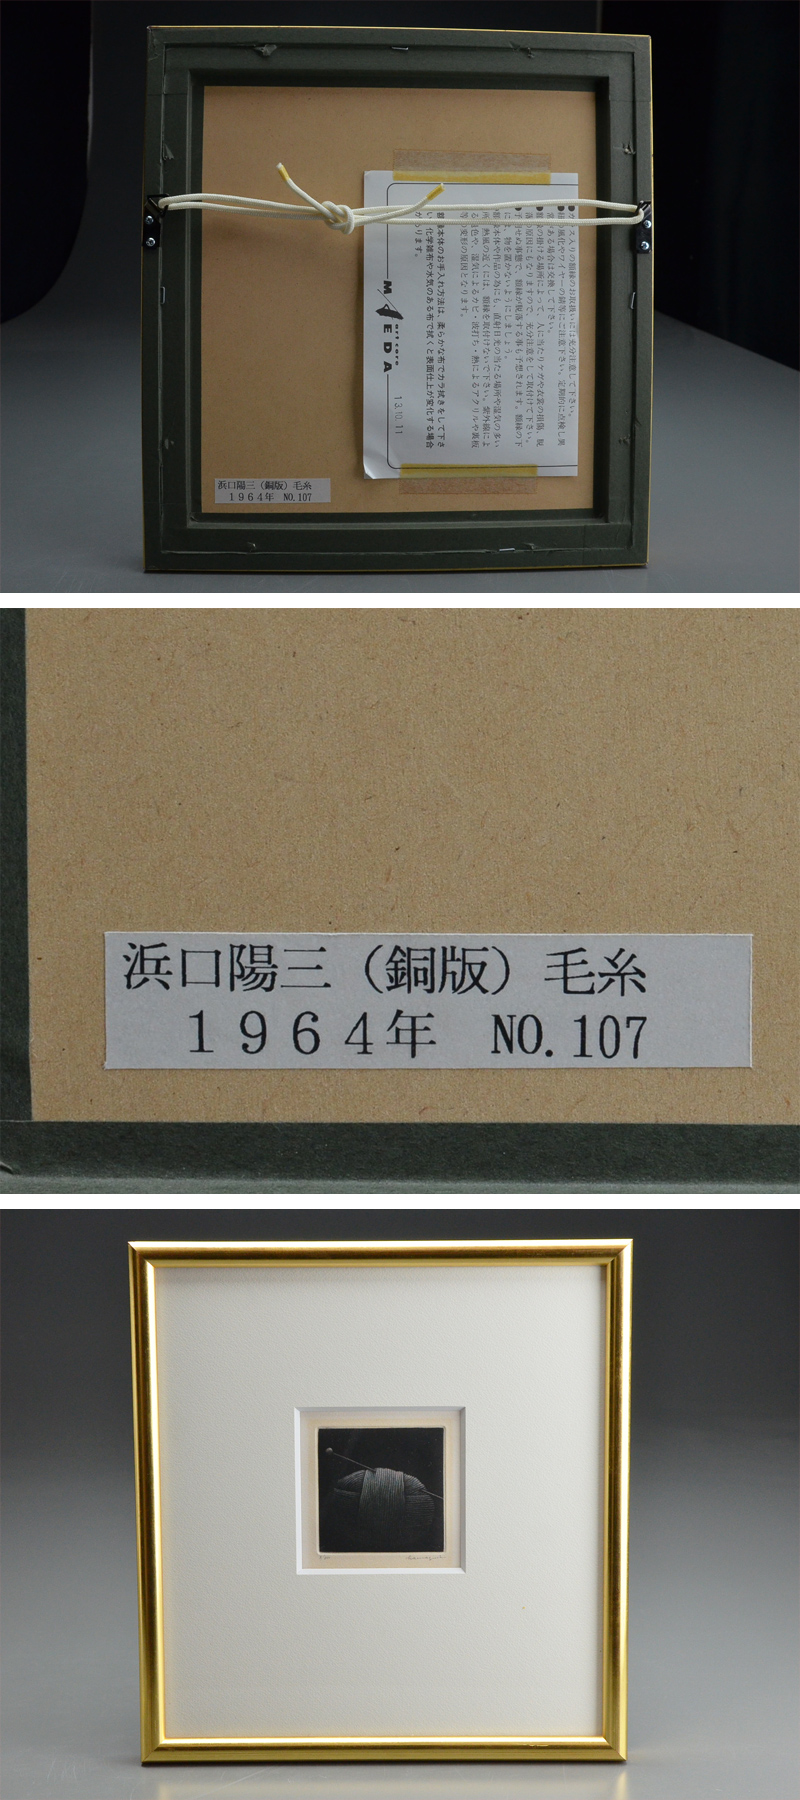 国内最安値浜口陽三 「 毛糸 」銅版画 ED 3/50 サイン有 額装 本物保証 06i848 銅版画、エッチング